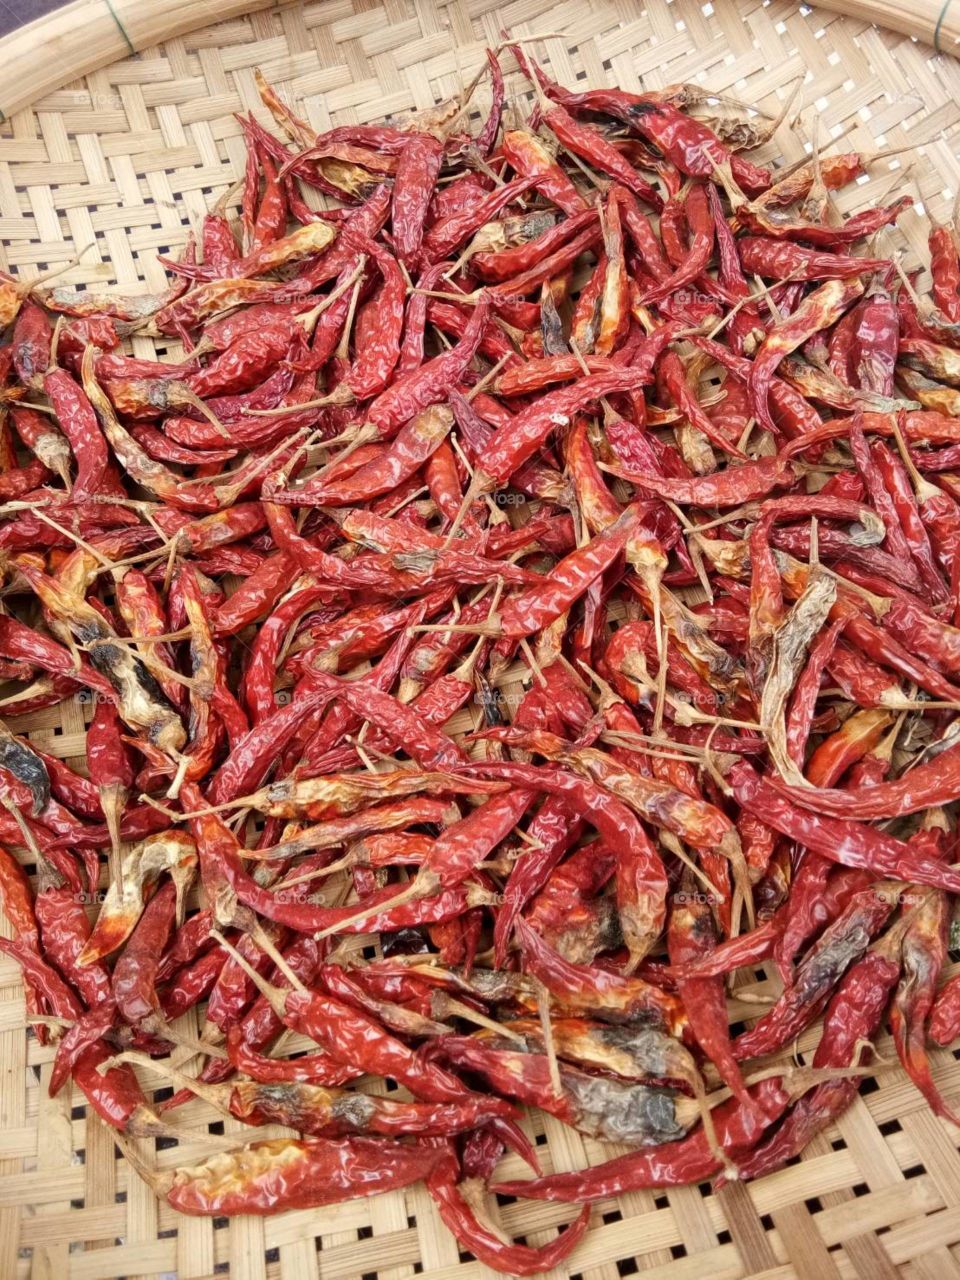 dried chilli